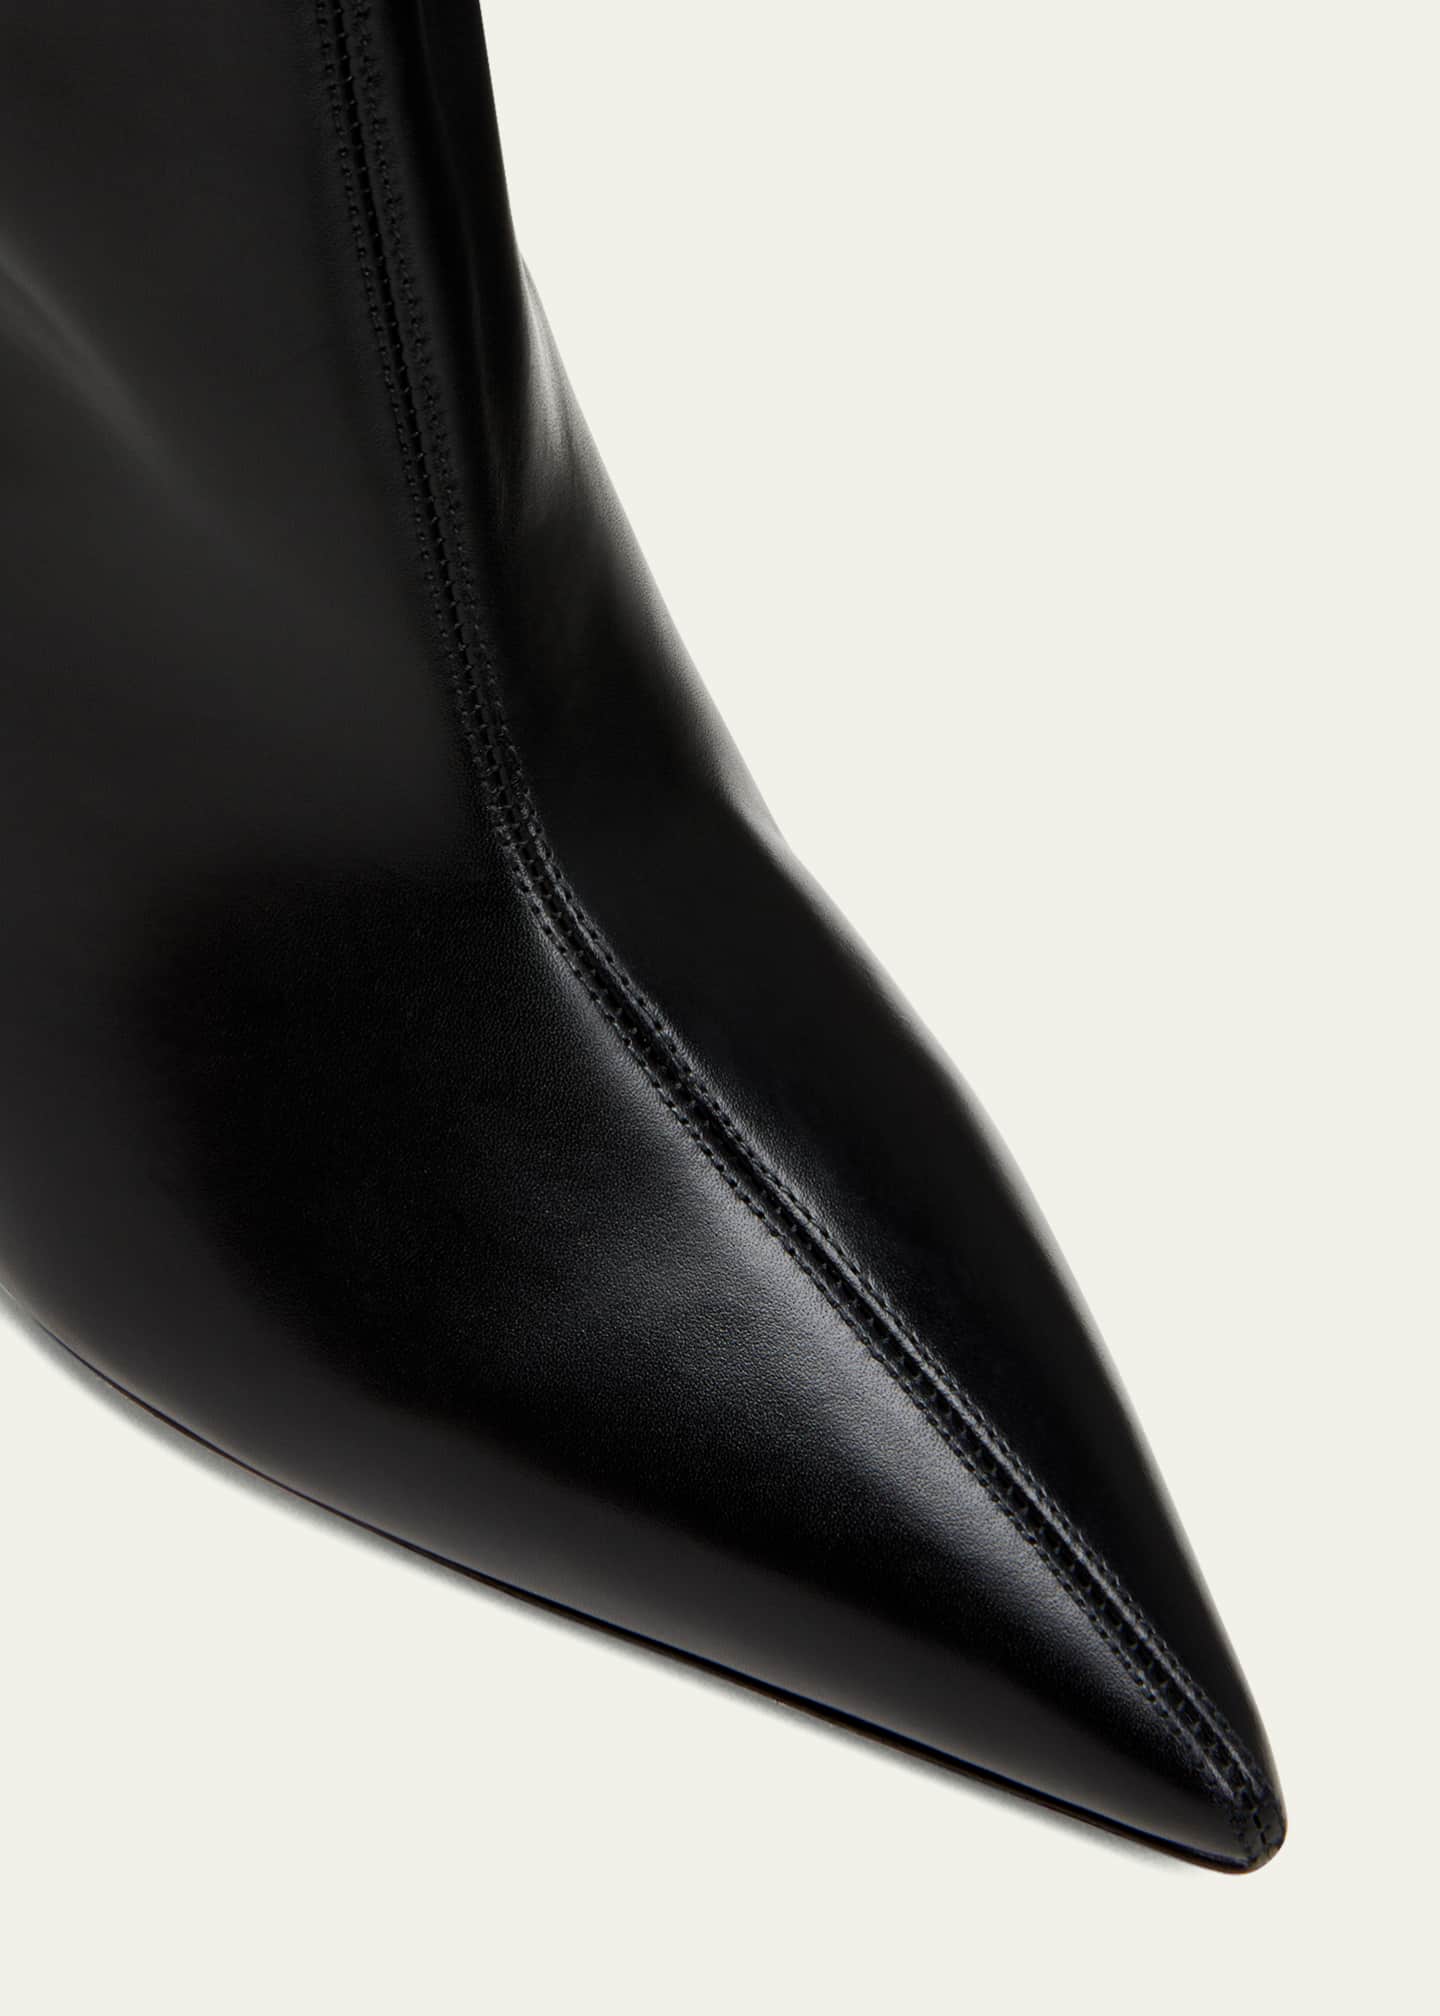 Jimmy Choo Blake Tall Leather Wedge Boots - Bergdorf Goodman